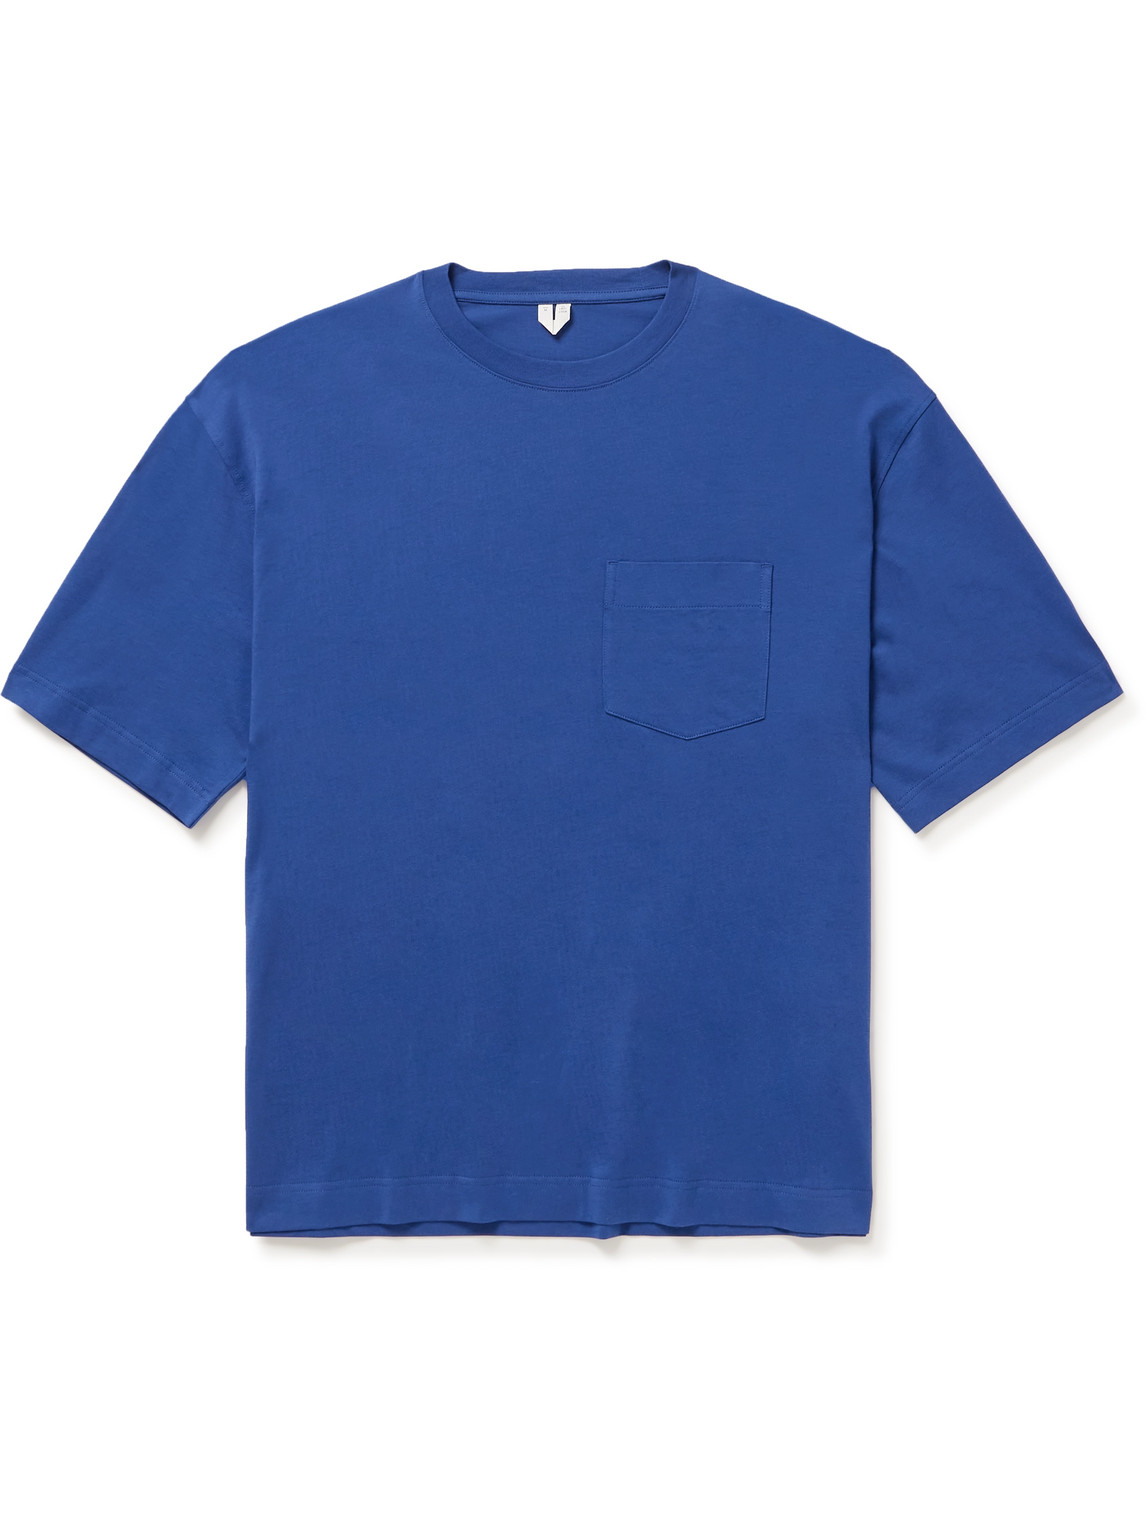 Arket Okar Organic Cotton-jersey T-shirt In Blue